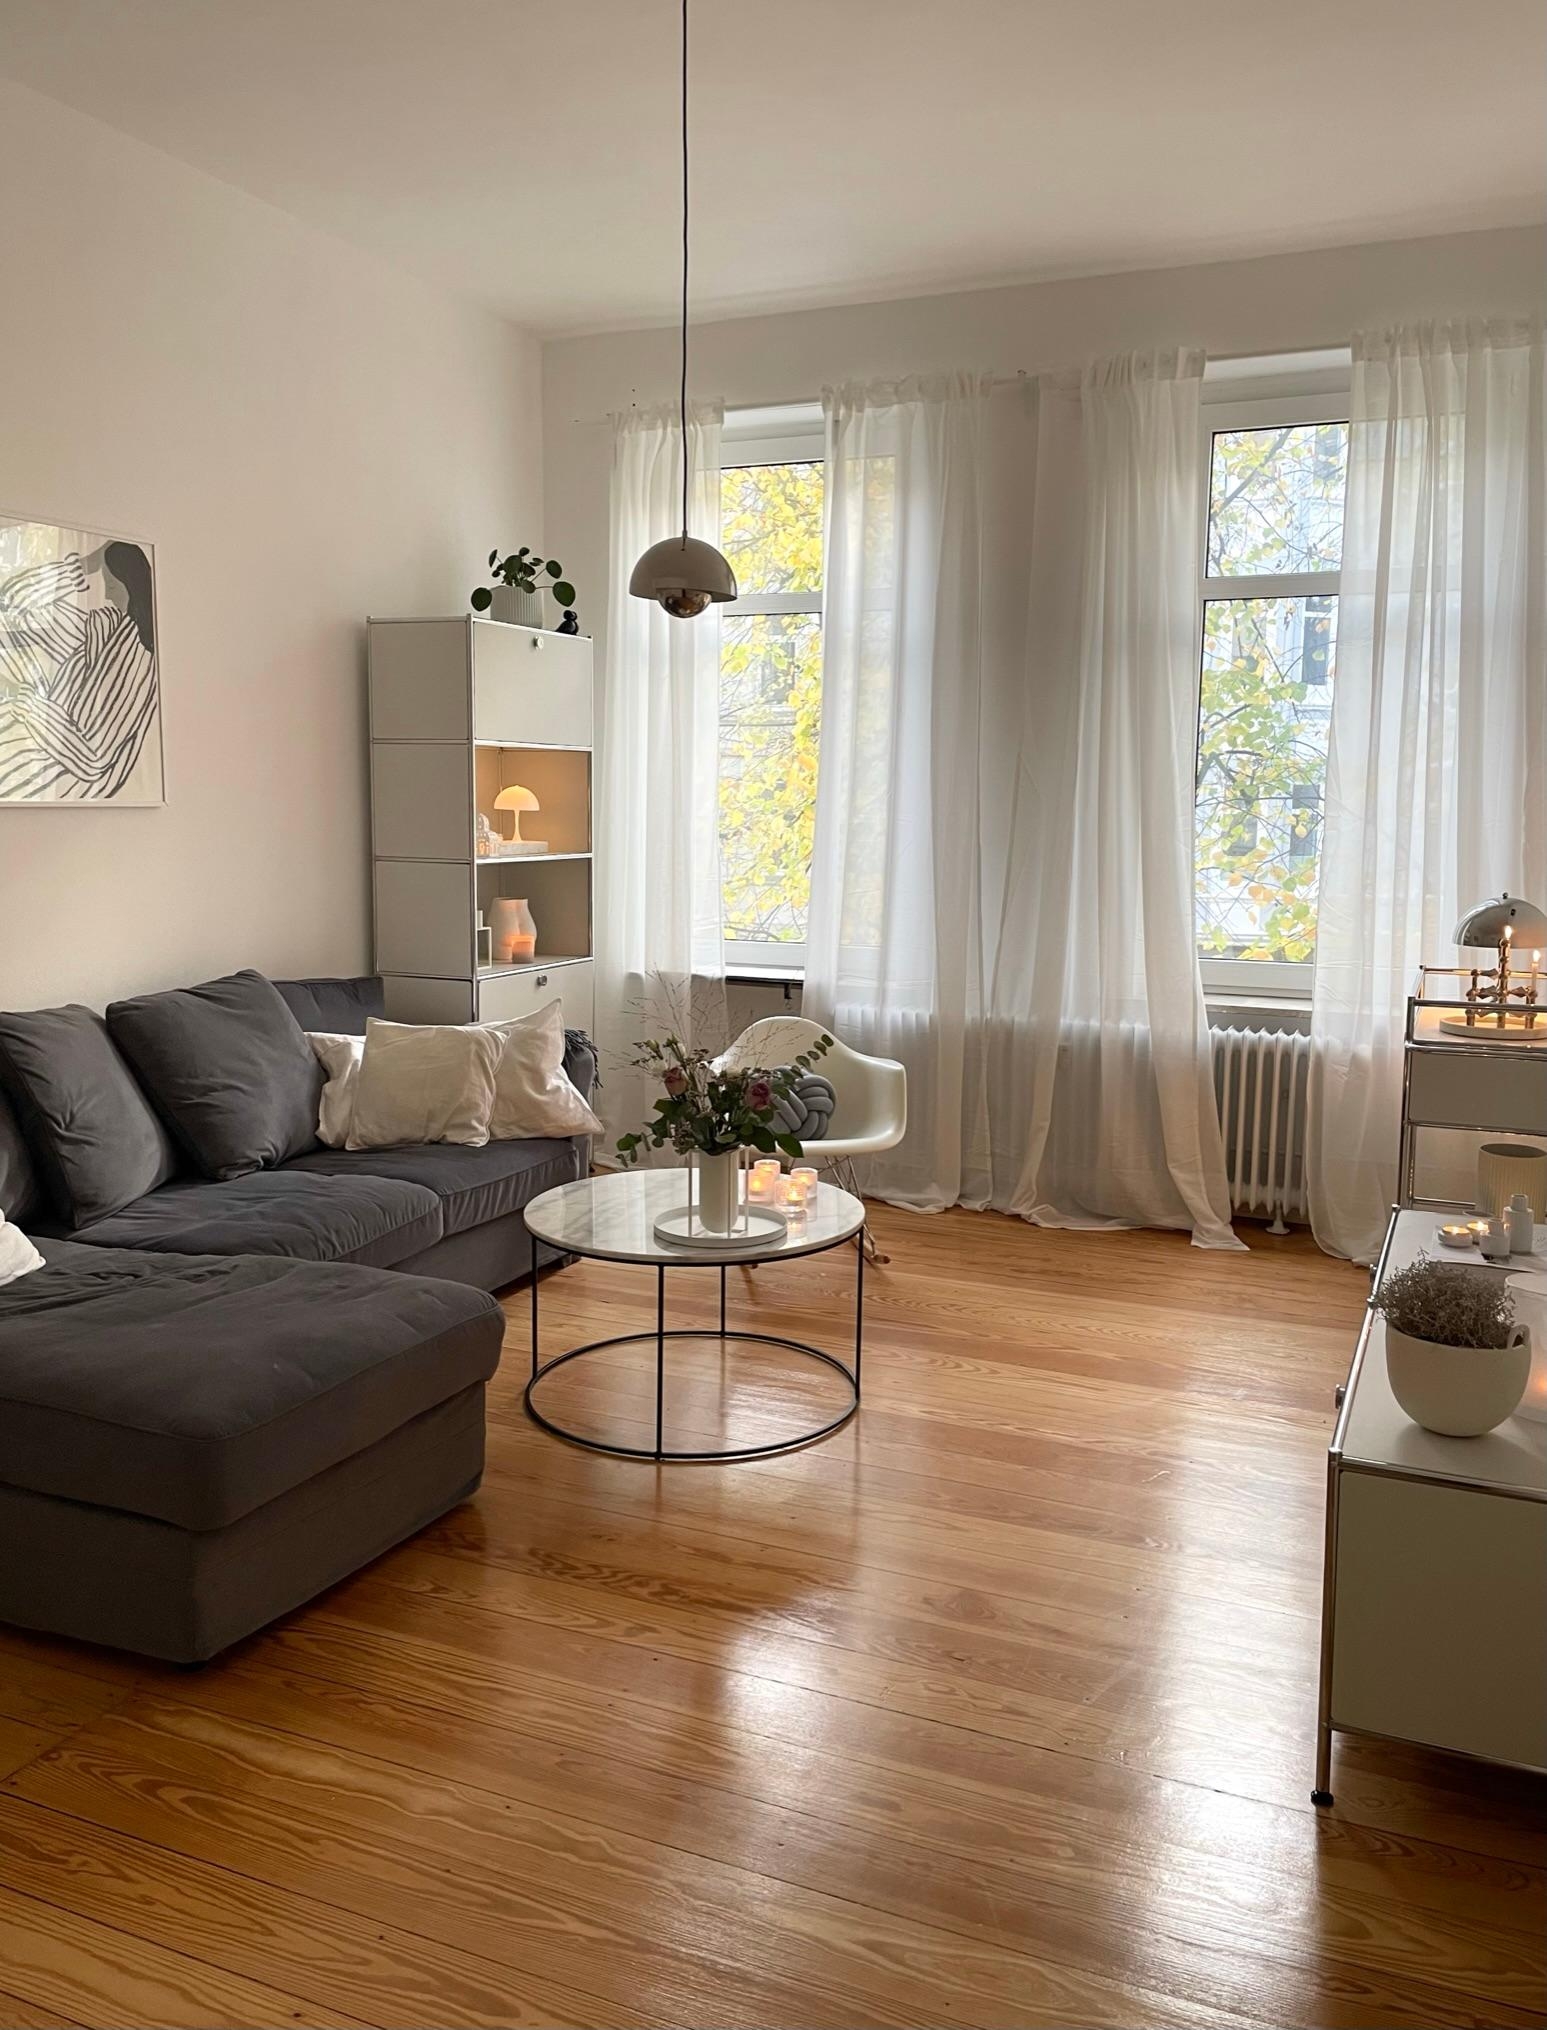 Unser neues Wohnzimmer ✨ #neuhier #wohnzimmer #skandinavischwohnen #dänischesdesign #altbauwohnung 